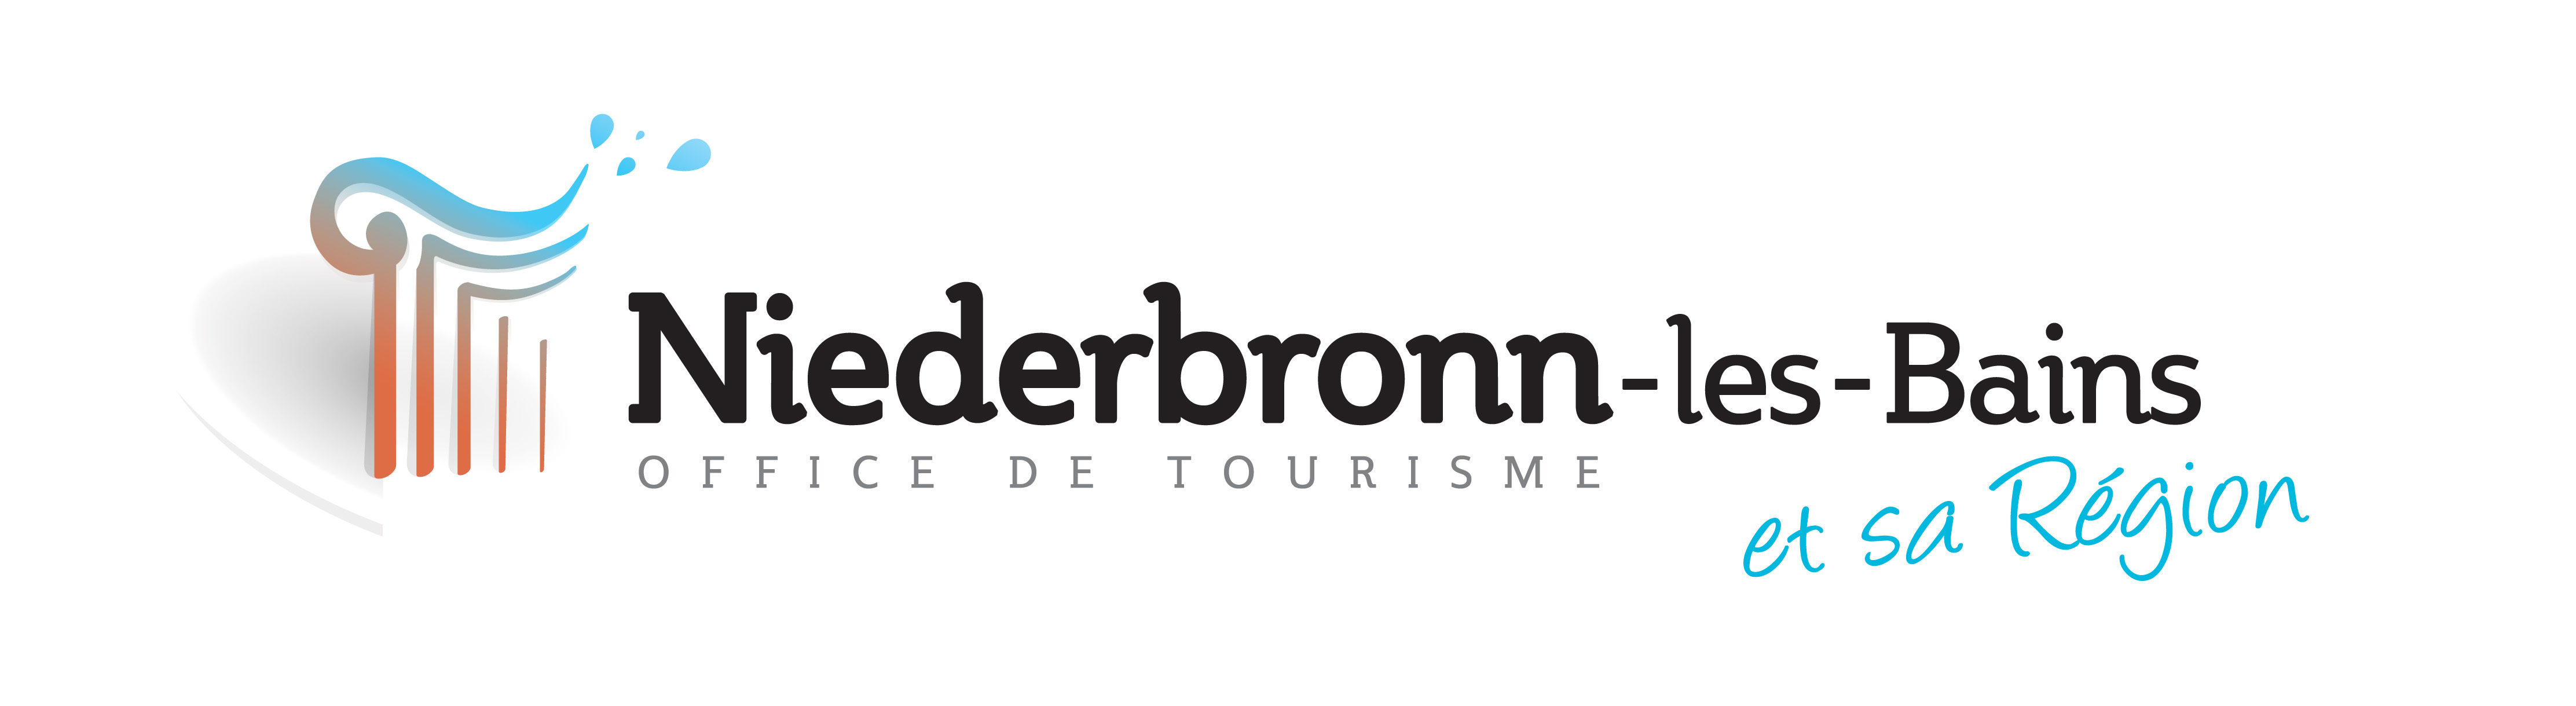 tourisme logo ot